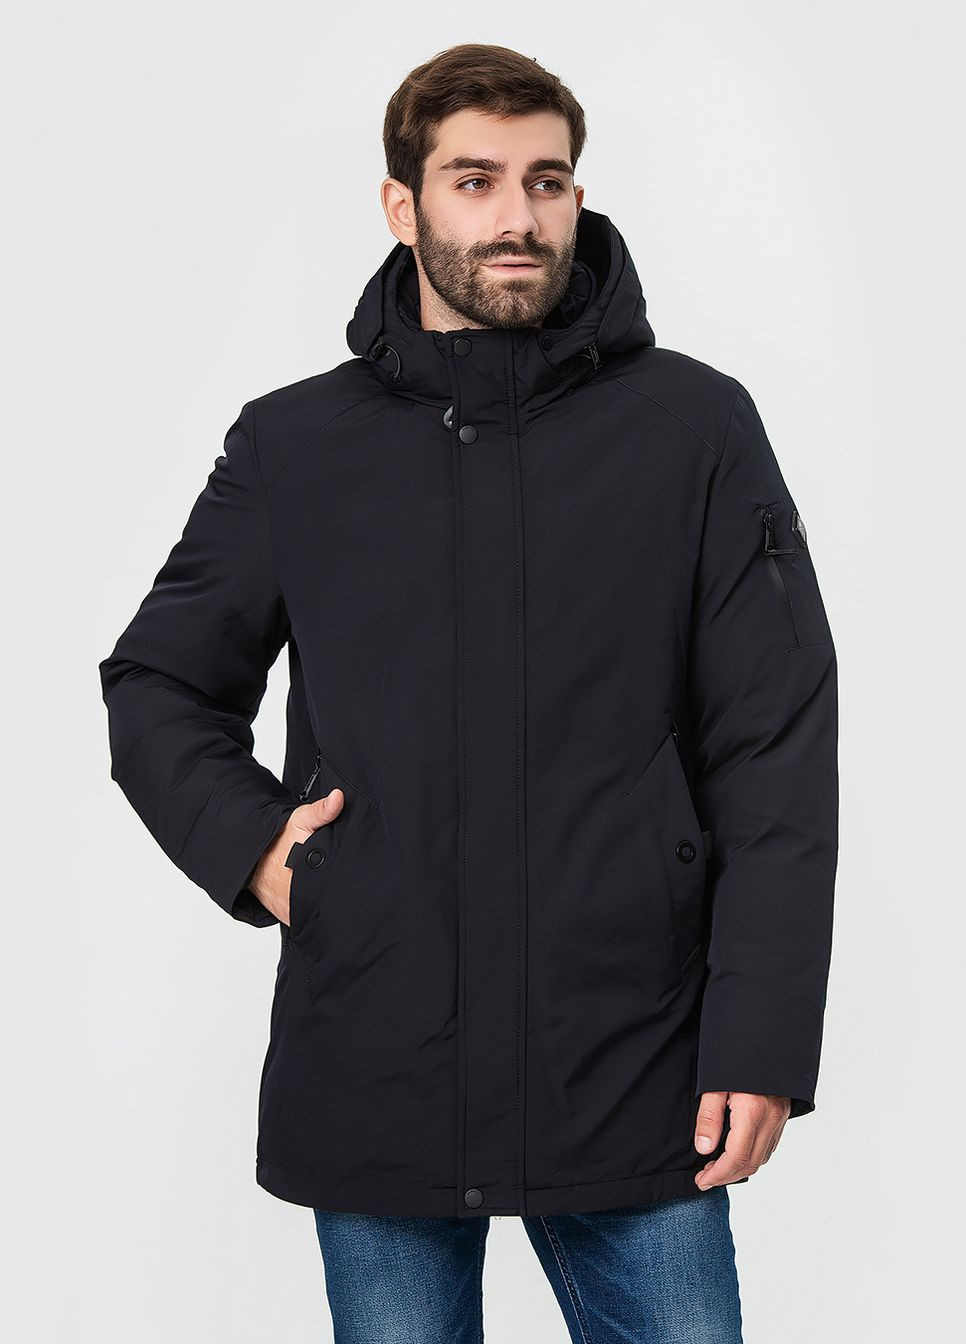 Черная зимняя зимняя куртка с капюшоном модель ZPJV 1275